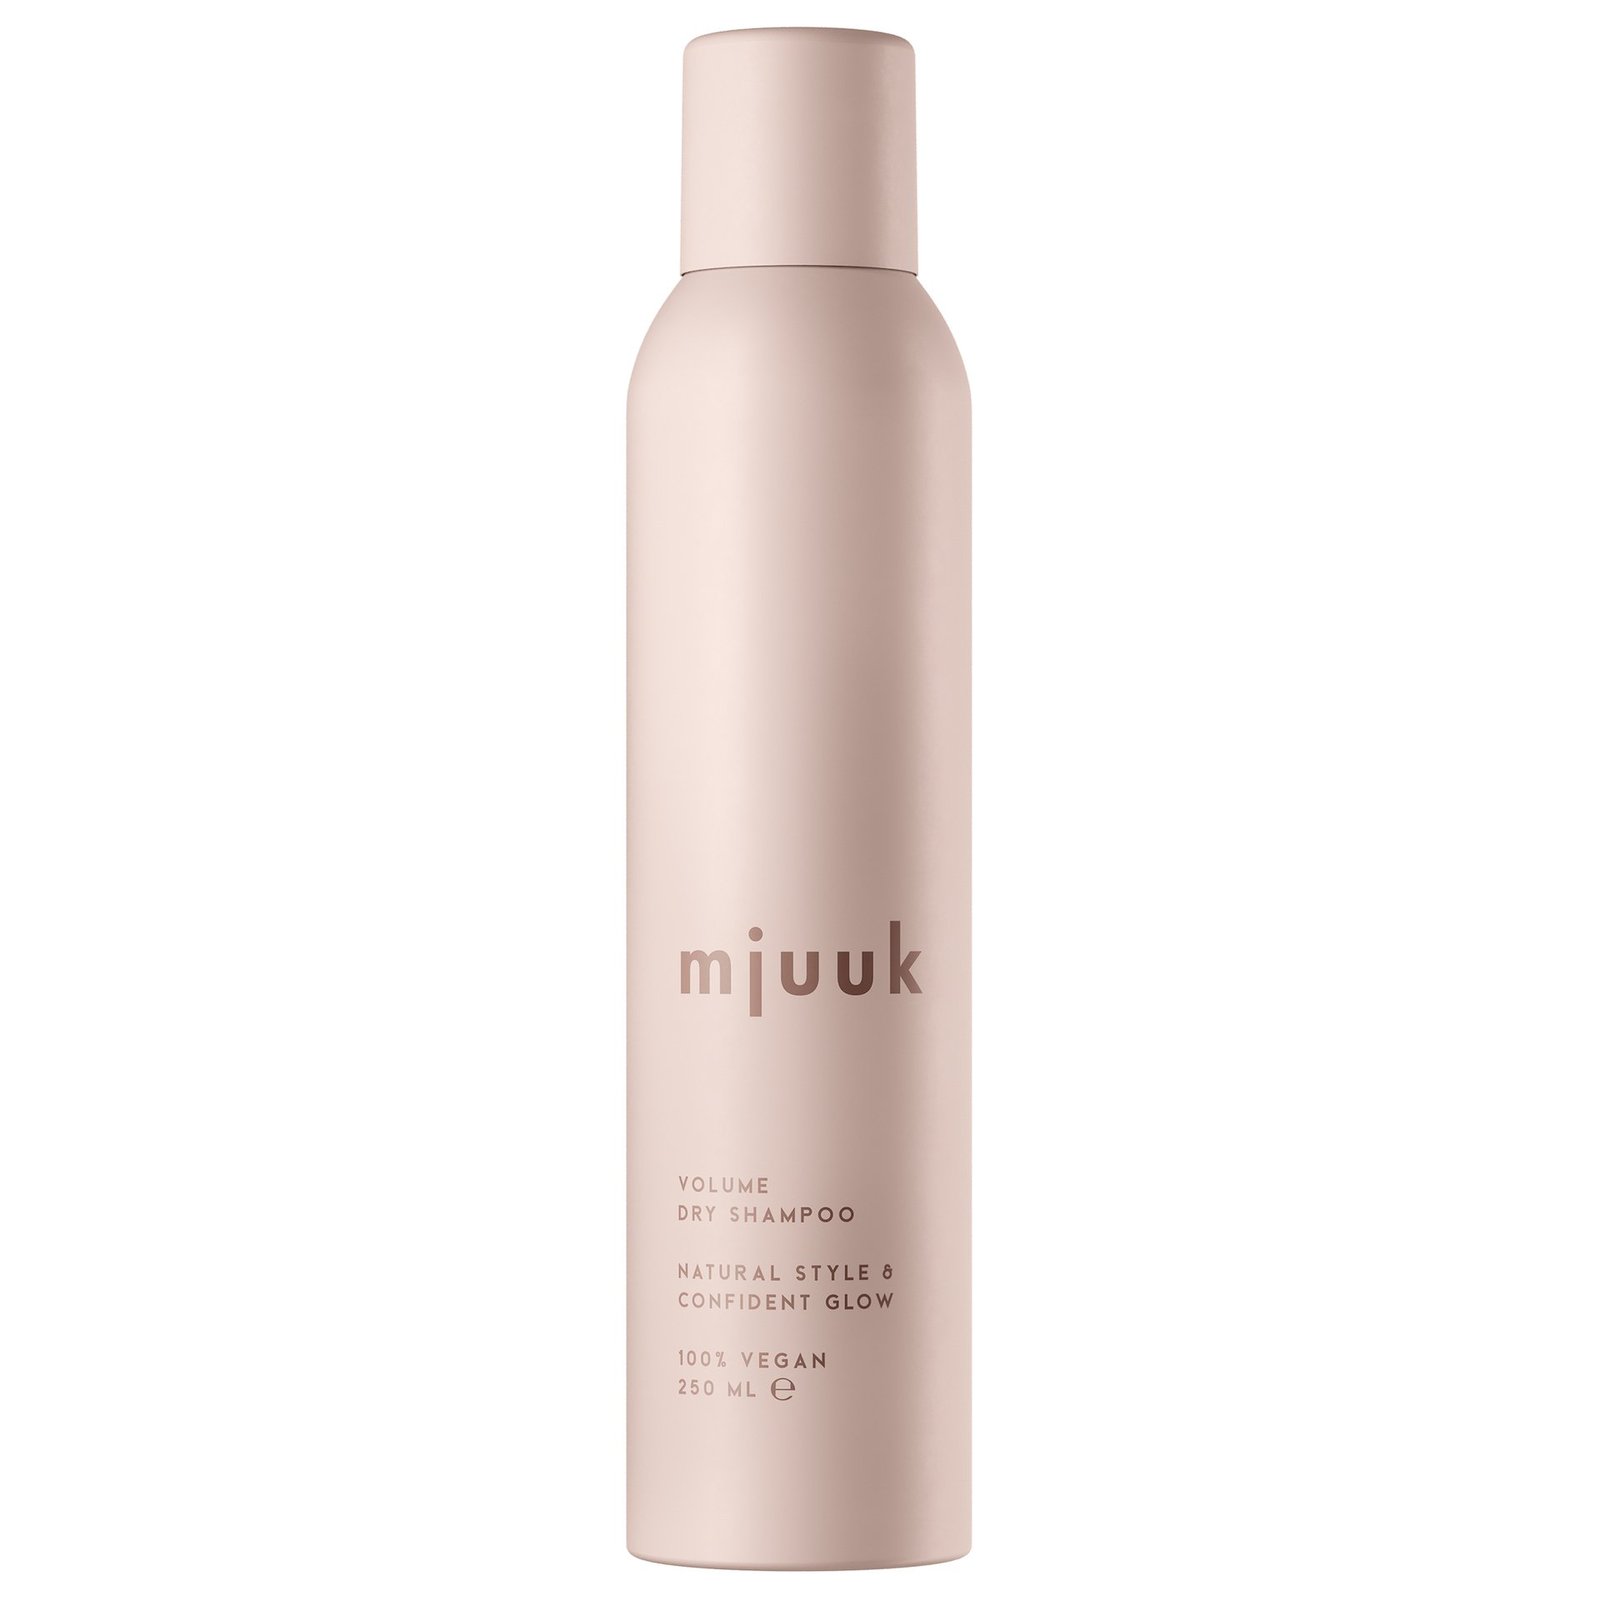 Mjuuk Volume Dry Shampoo 250ml